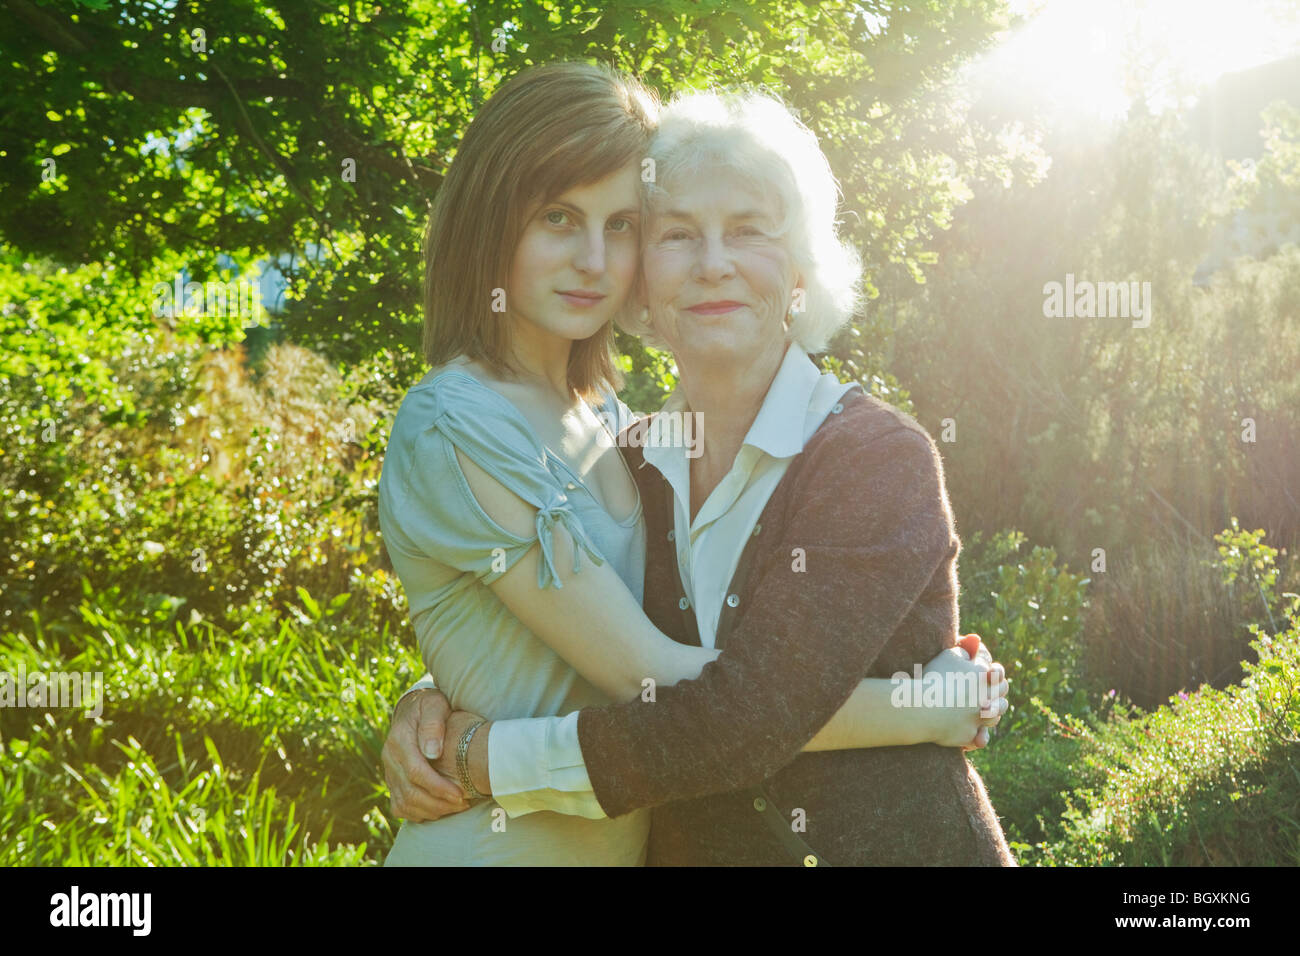 Обнимаю бабушку бабушку мою потому что минус. Бабушка и взрослая внучка. Бабушка обнимает внучку. Дочки обнимают бабушку фото картинка. Взрослая внучка обнимает бабушку.